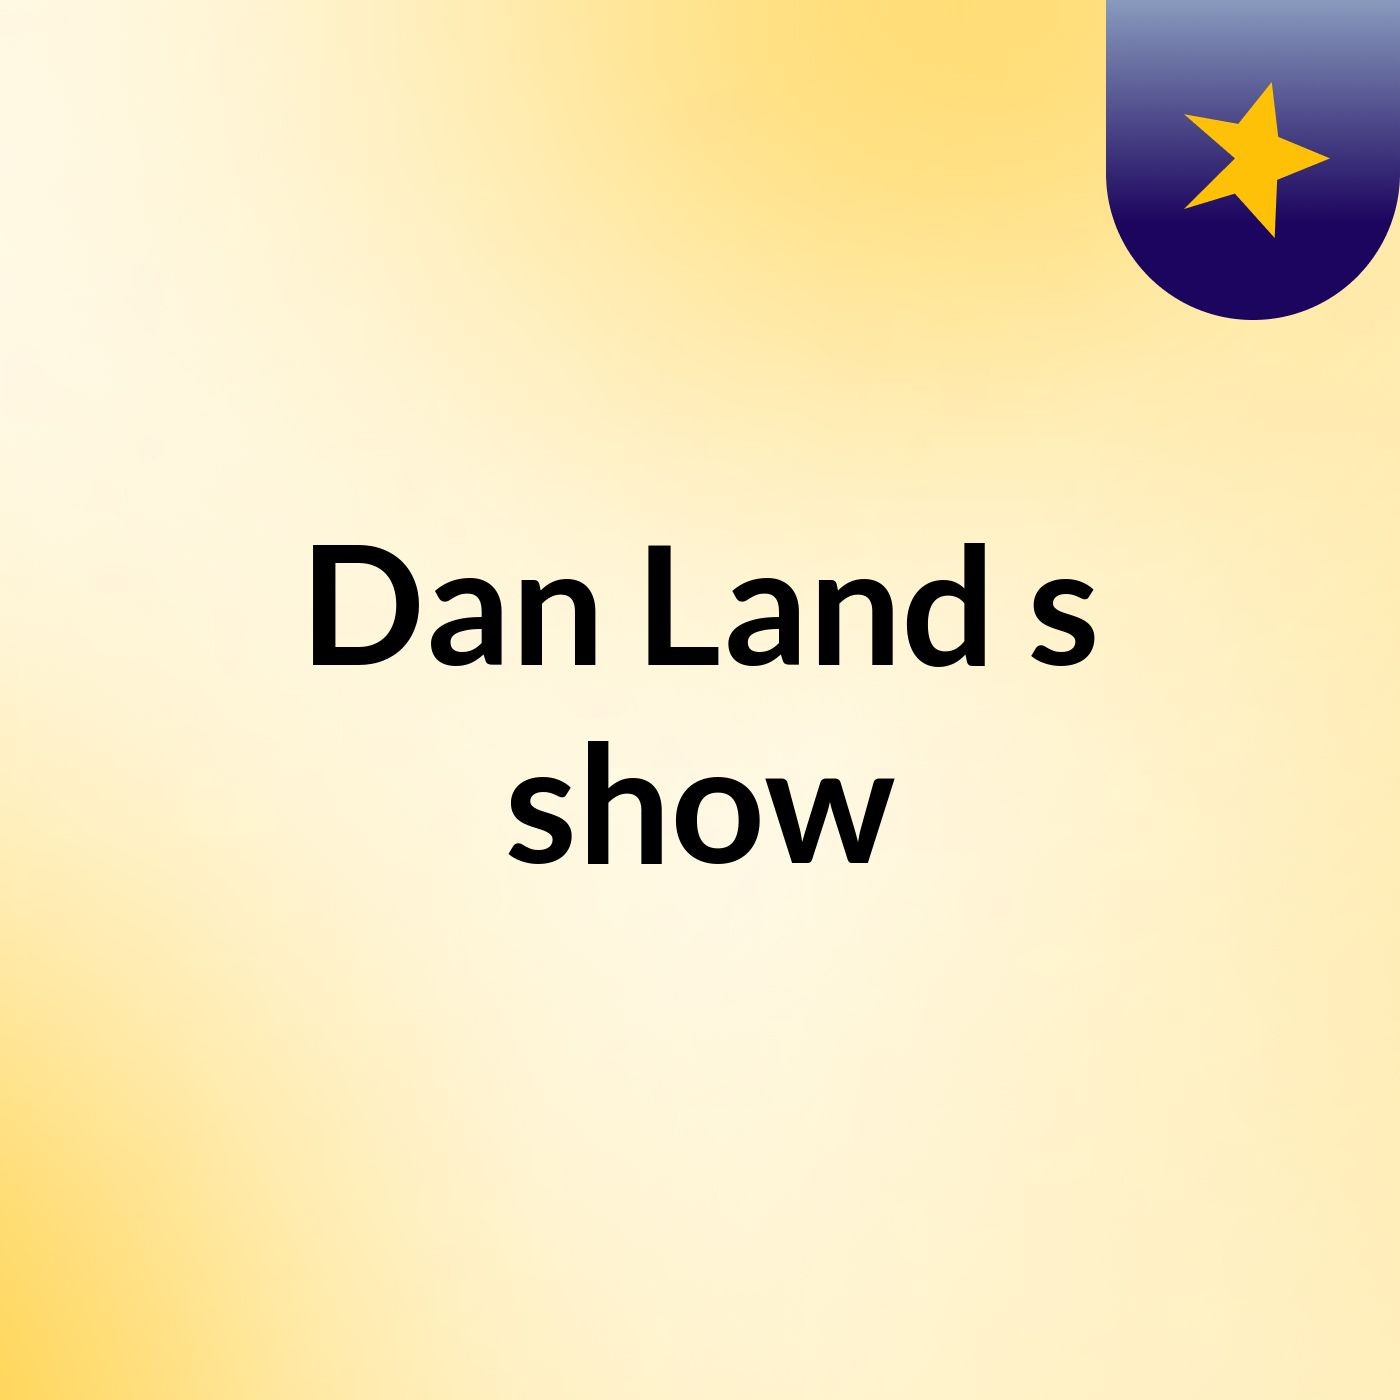 Dan Land's show